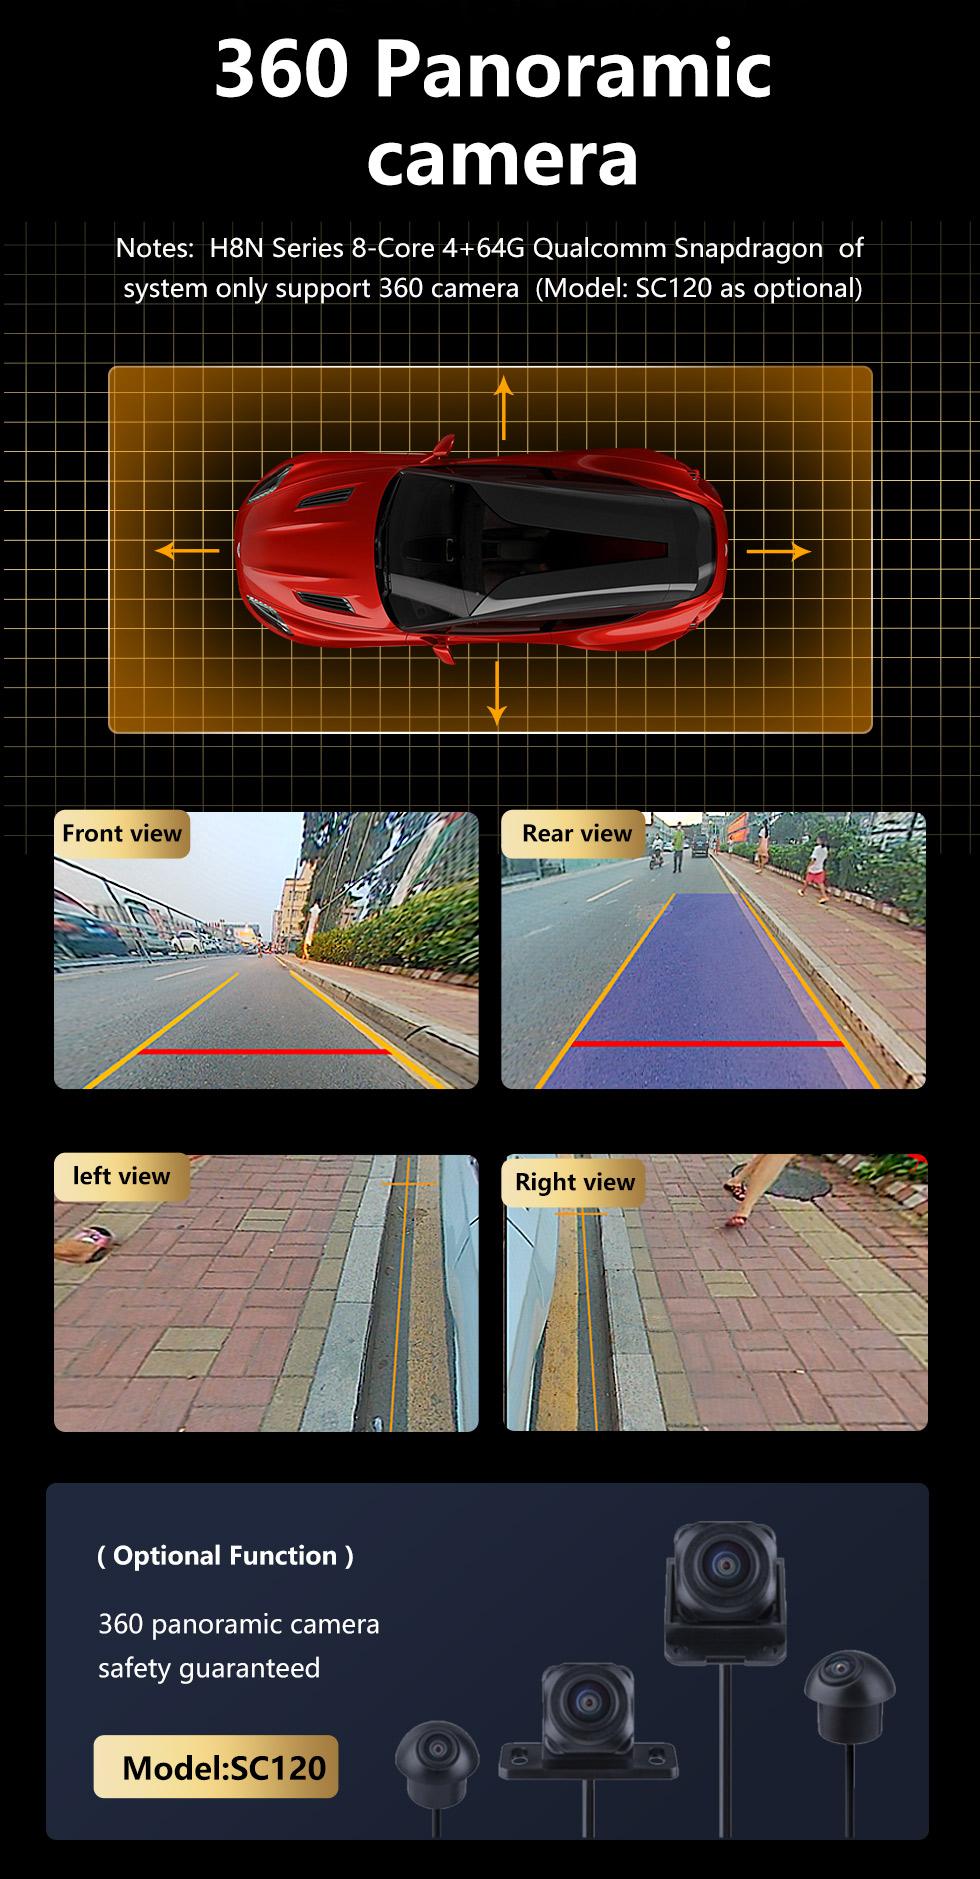 Seicane Android 10.0 para BMW 5 Series E60 2009 2010 BMW 3 Series E90 2009-2012 Radio de coche Sistema de navegación GPS con WiFi Bluetooth compatible Carplay DVR Cámara de visión trasera